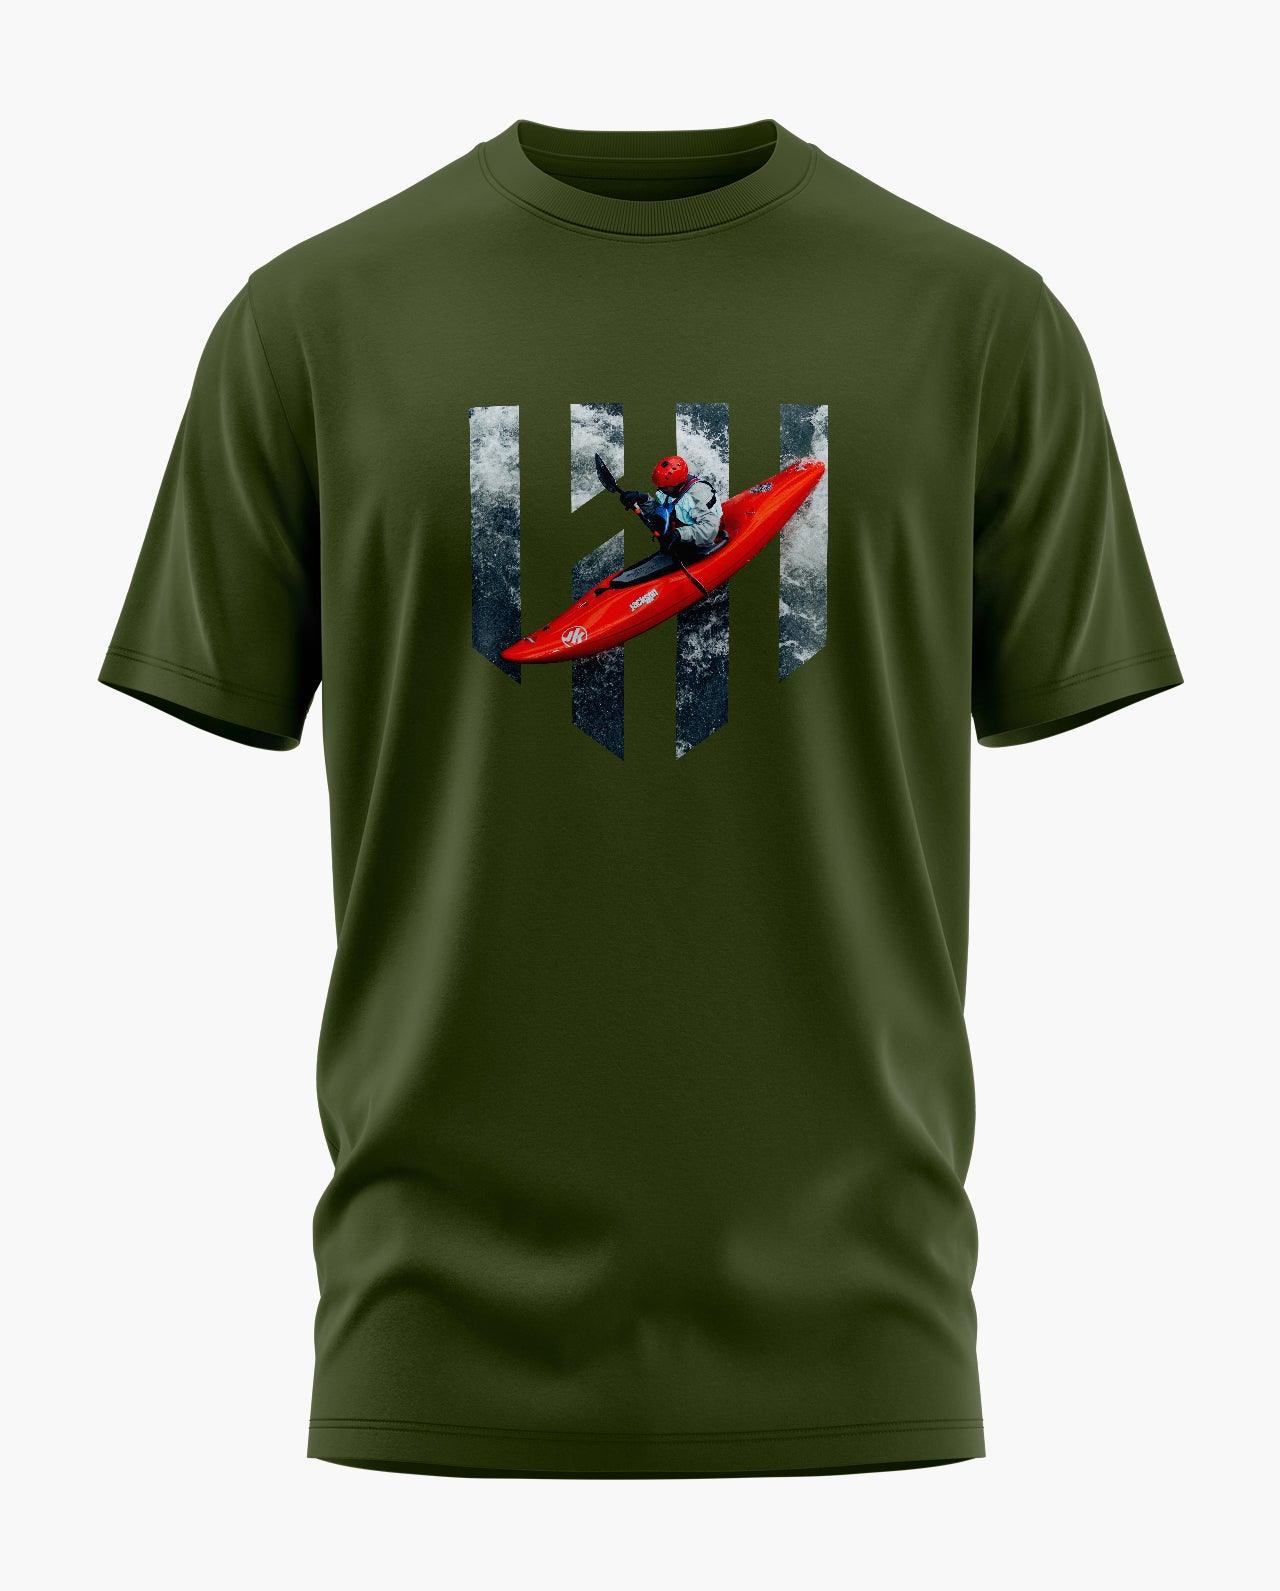 Kayaking T-Shirt - Aero Armour